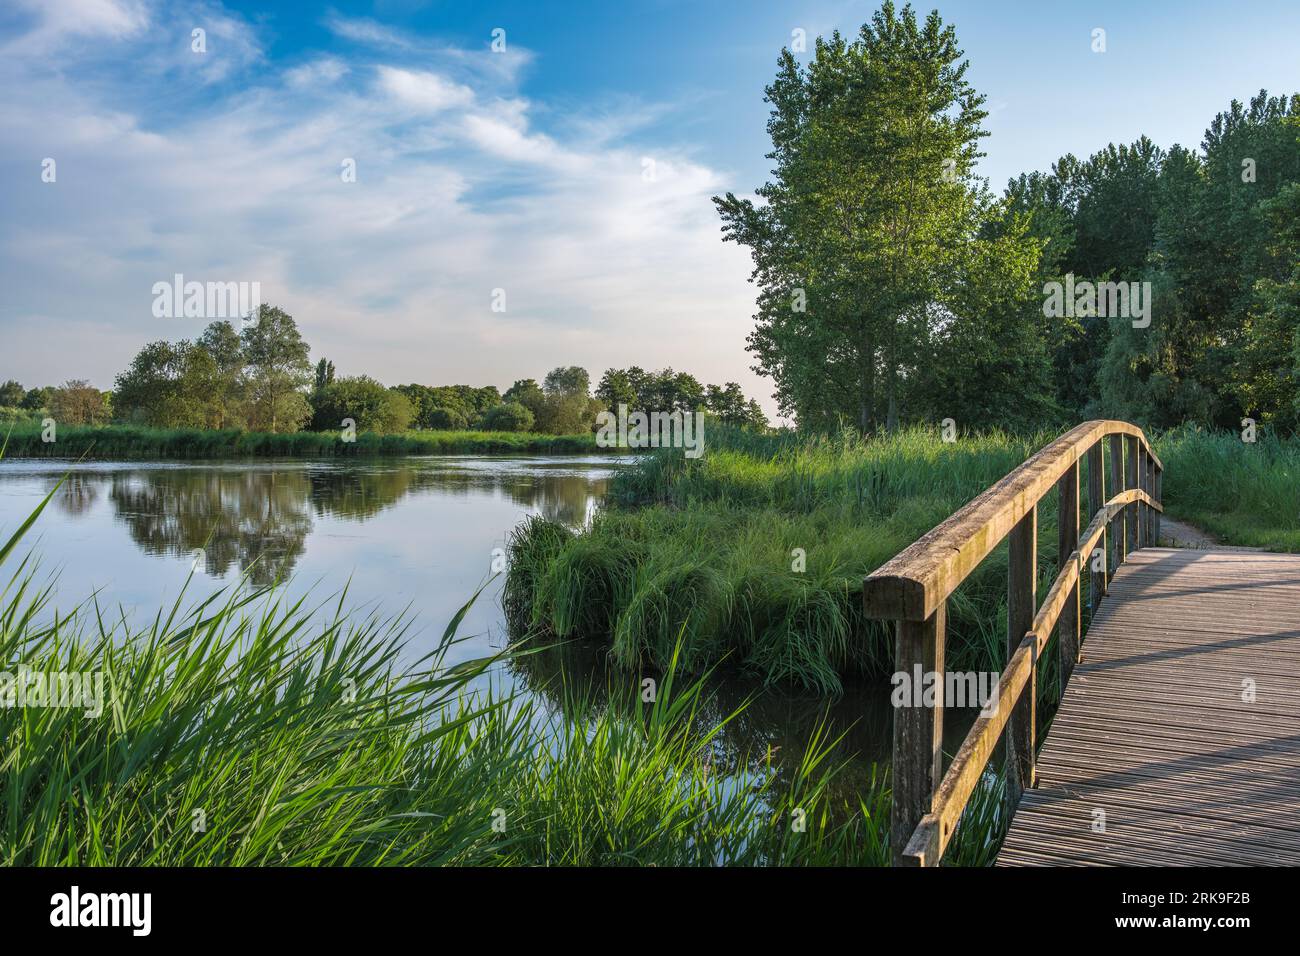 Schöner Landschaftspark, genannt Het Abtwoudse Bos, an der Grenze zur Stadt Delft, Niederlande. Der Wald mit vielen Wasserbächen und kleinen Brüchen Stockfoto